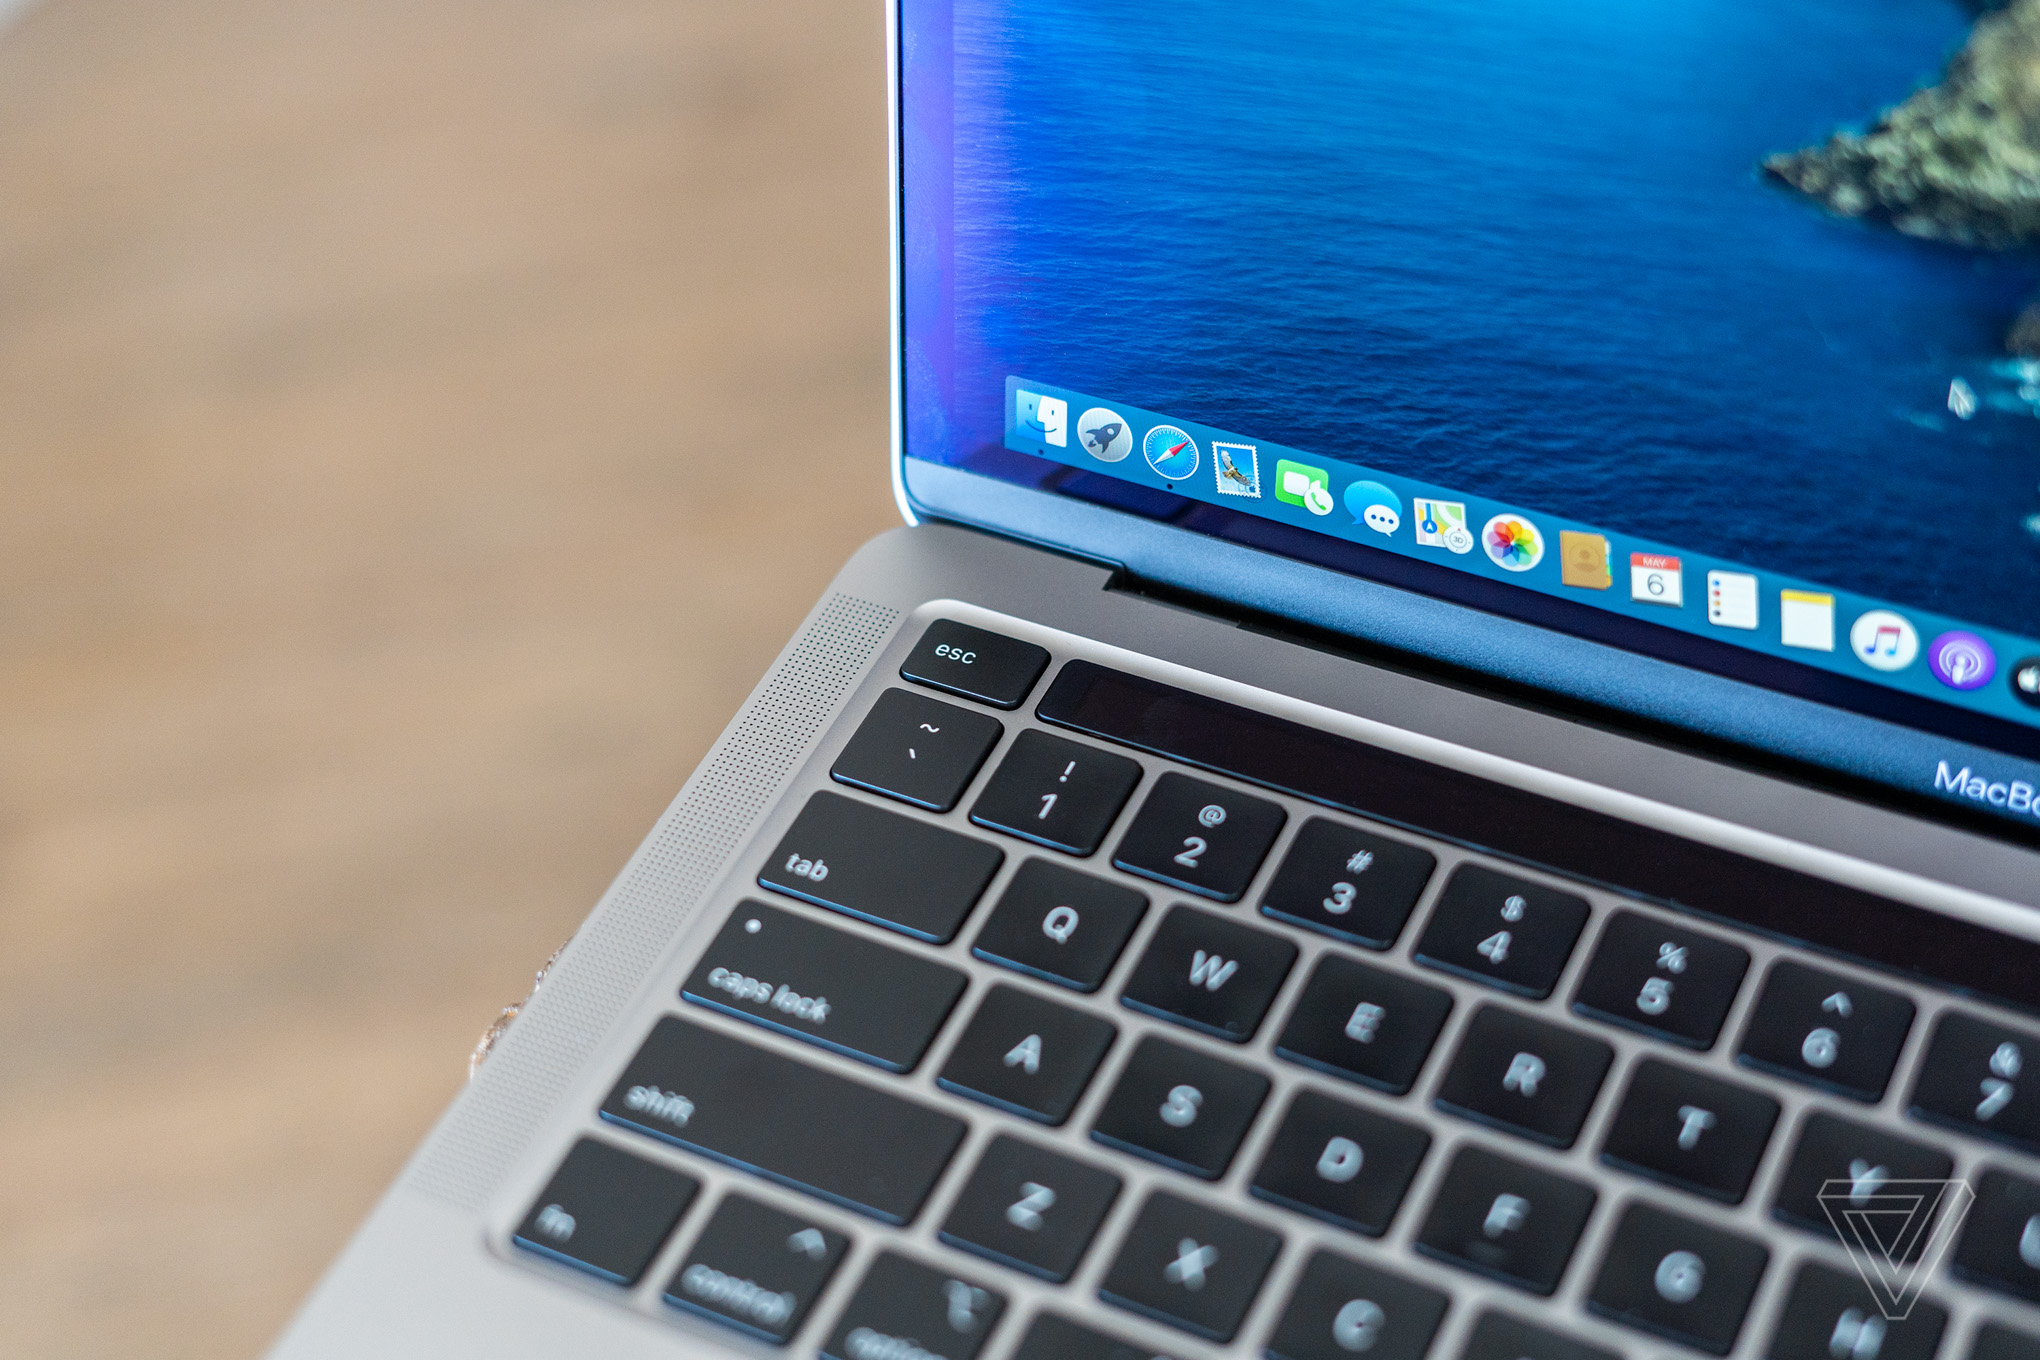 Tổng hợp đánh giá về MacBook Pro 13-inch 2020 mới: "Lựa chọn tốt, nhưng vẫn rất phân vân"